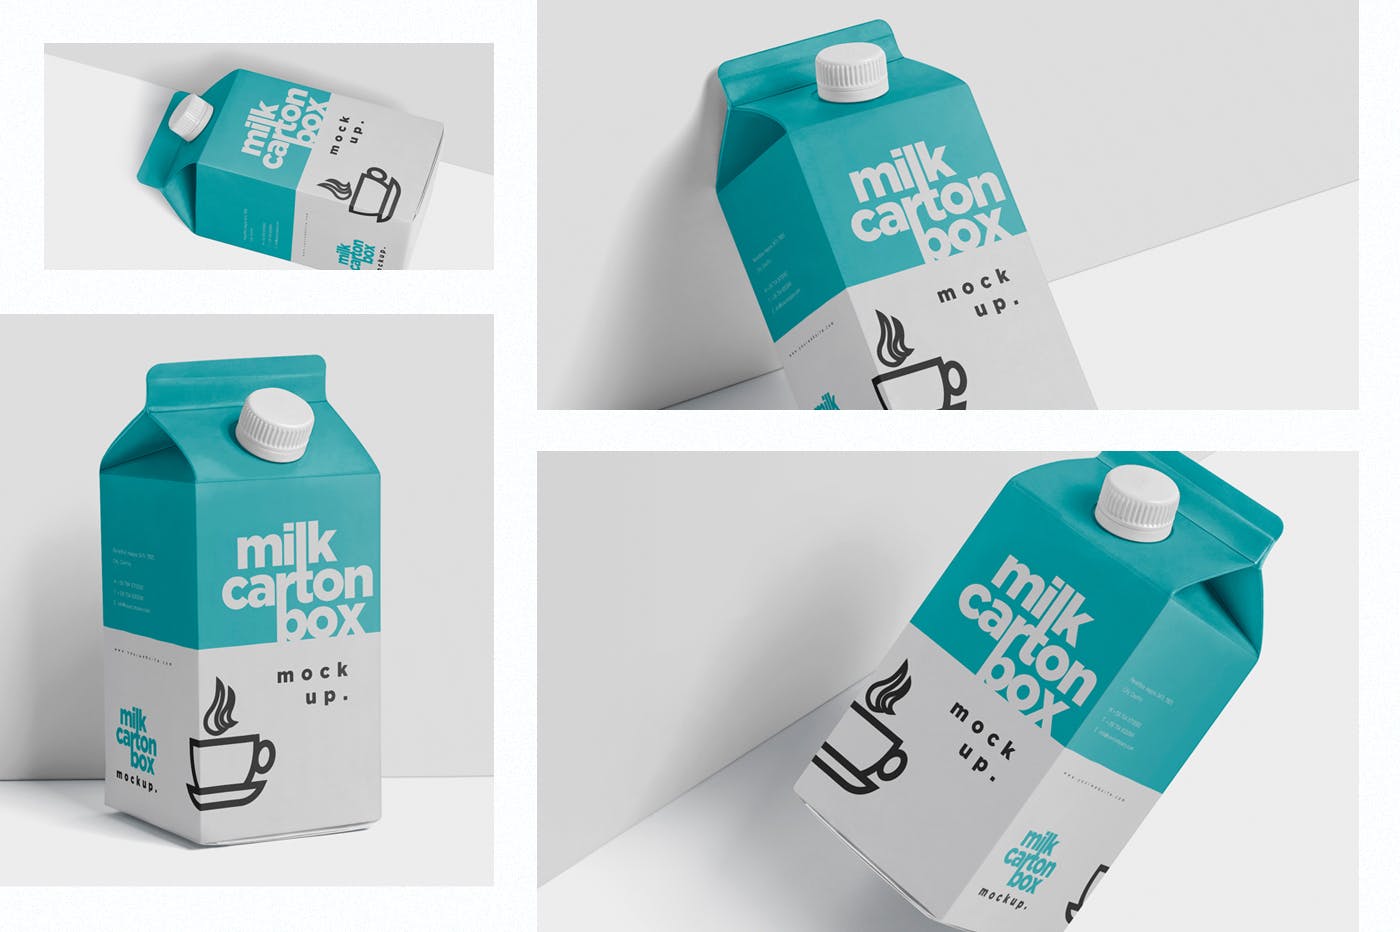 果汁/牛奶饮料纸盒包装效果图样机 Juice – Milk Mockup in 500ml Carton Box插图(1)